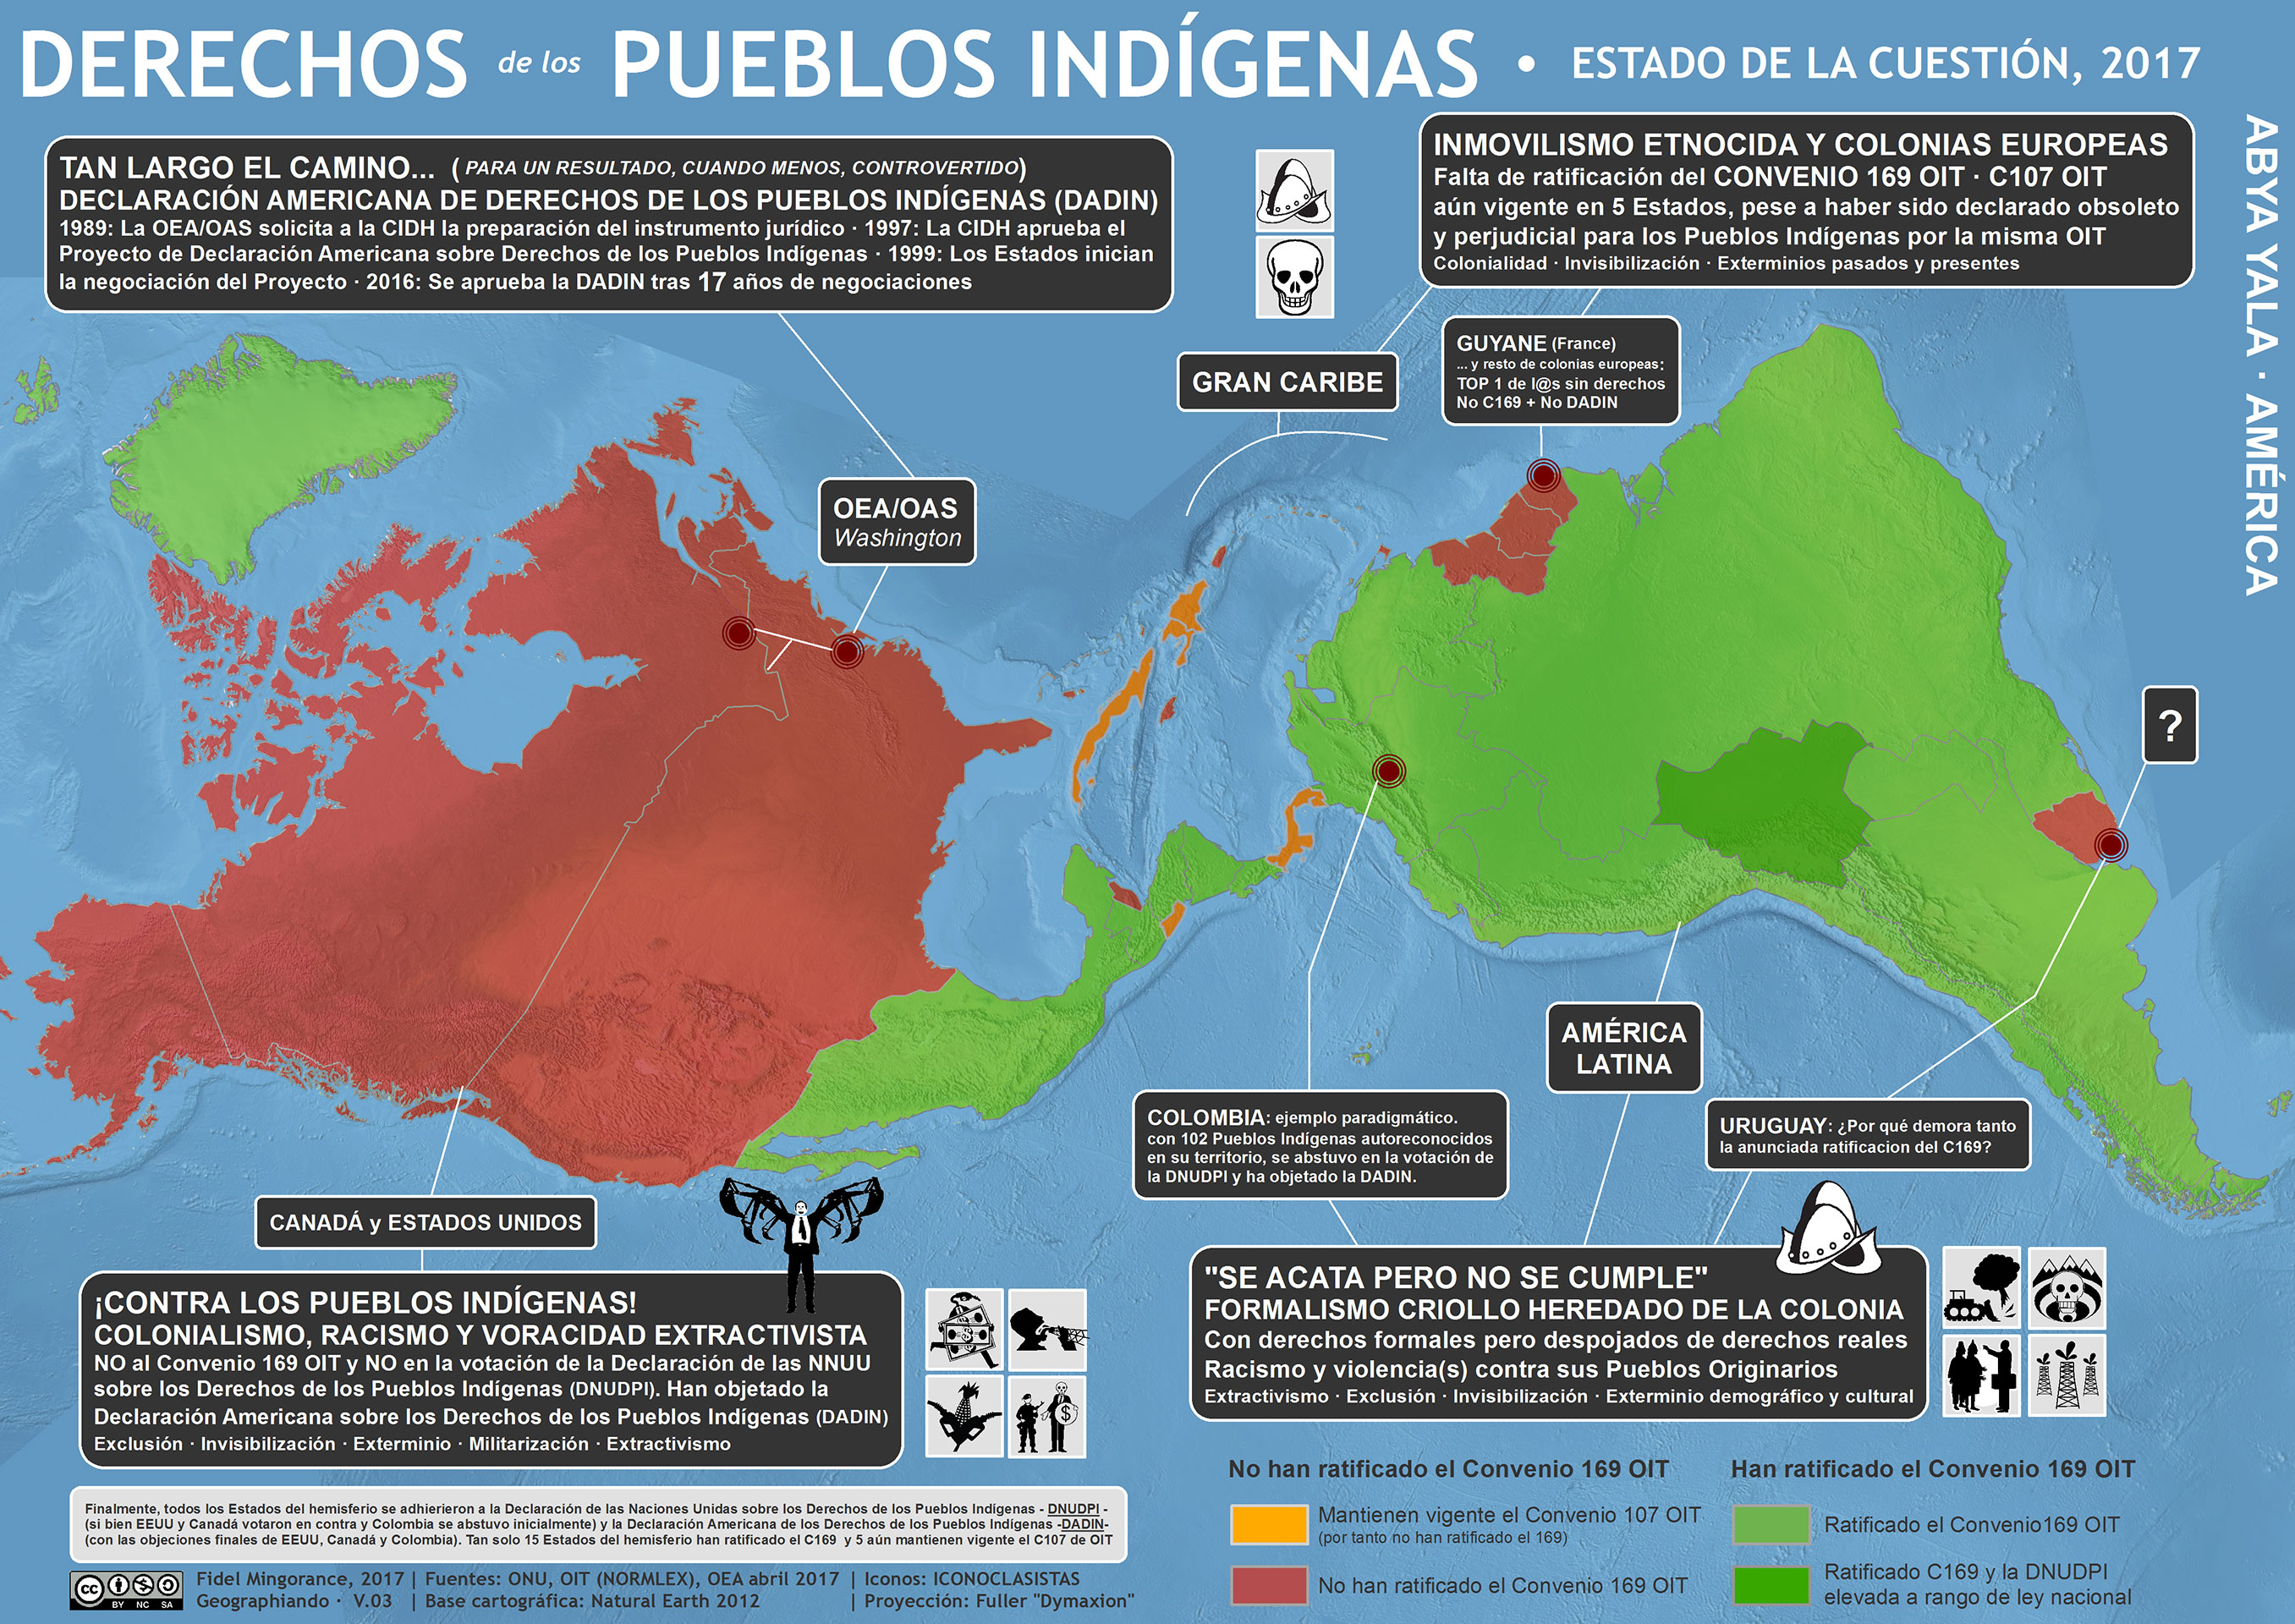 Derechos de los Pueblos Indígenas: estado de la cuestión 2017, un mapa crítico.